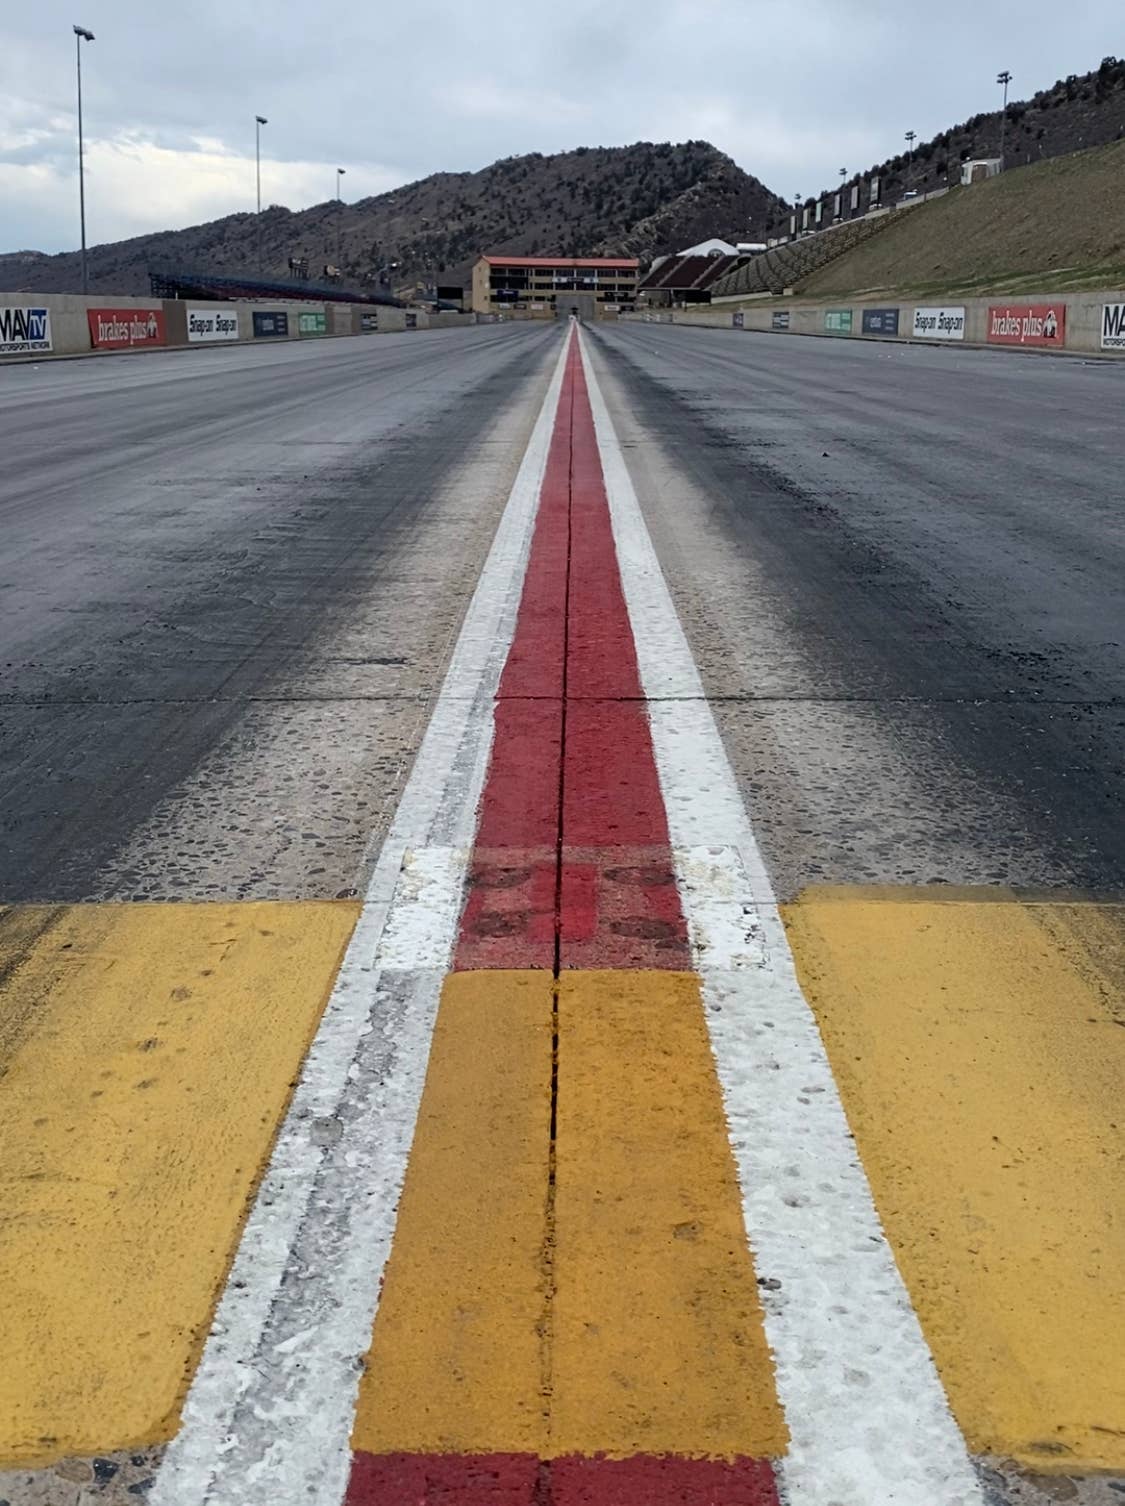 Bandimere Speedway in Morrison, Colorado